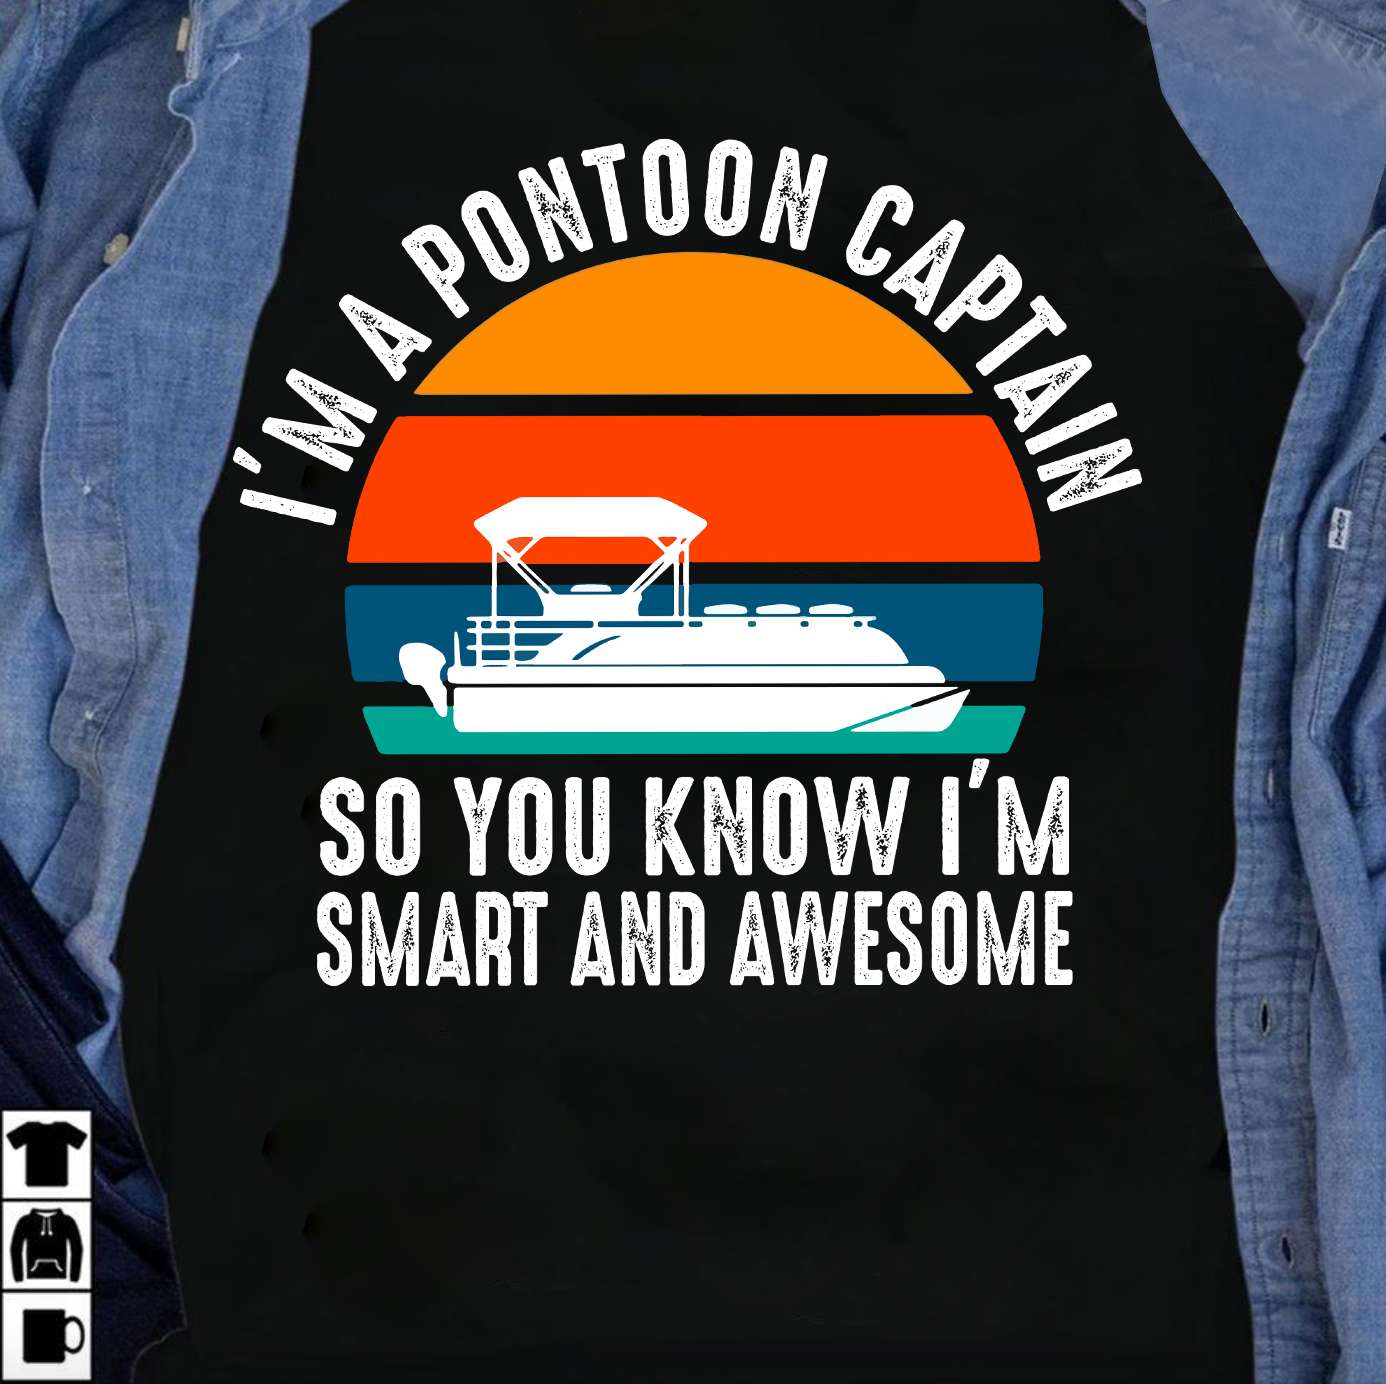 I'm a pontoon captain so you know I'm smart and awesome - Pontooning the hobby